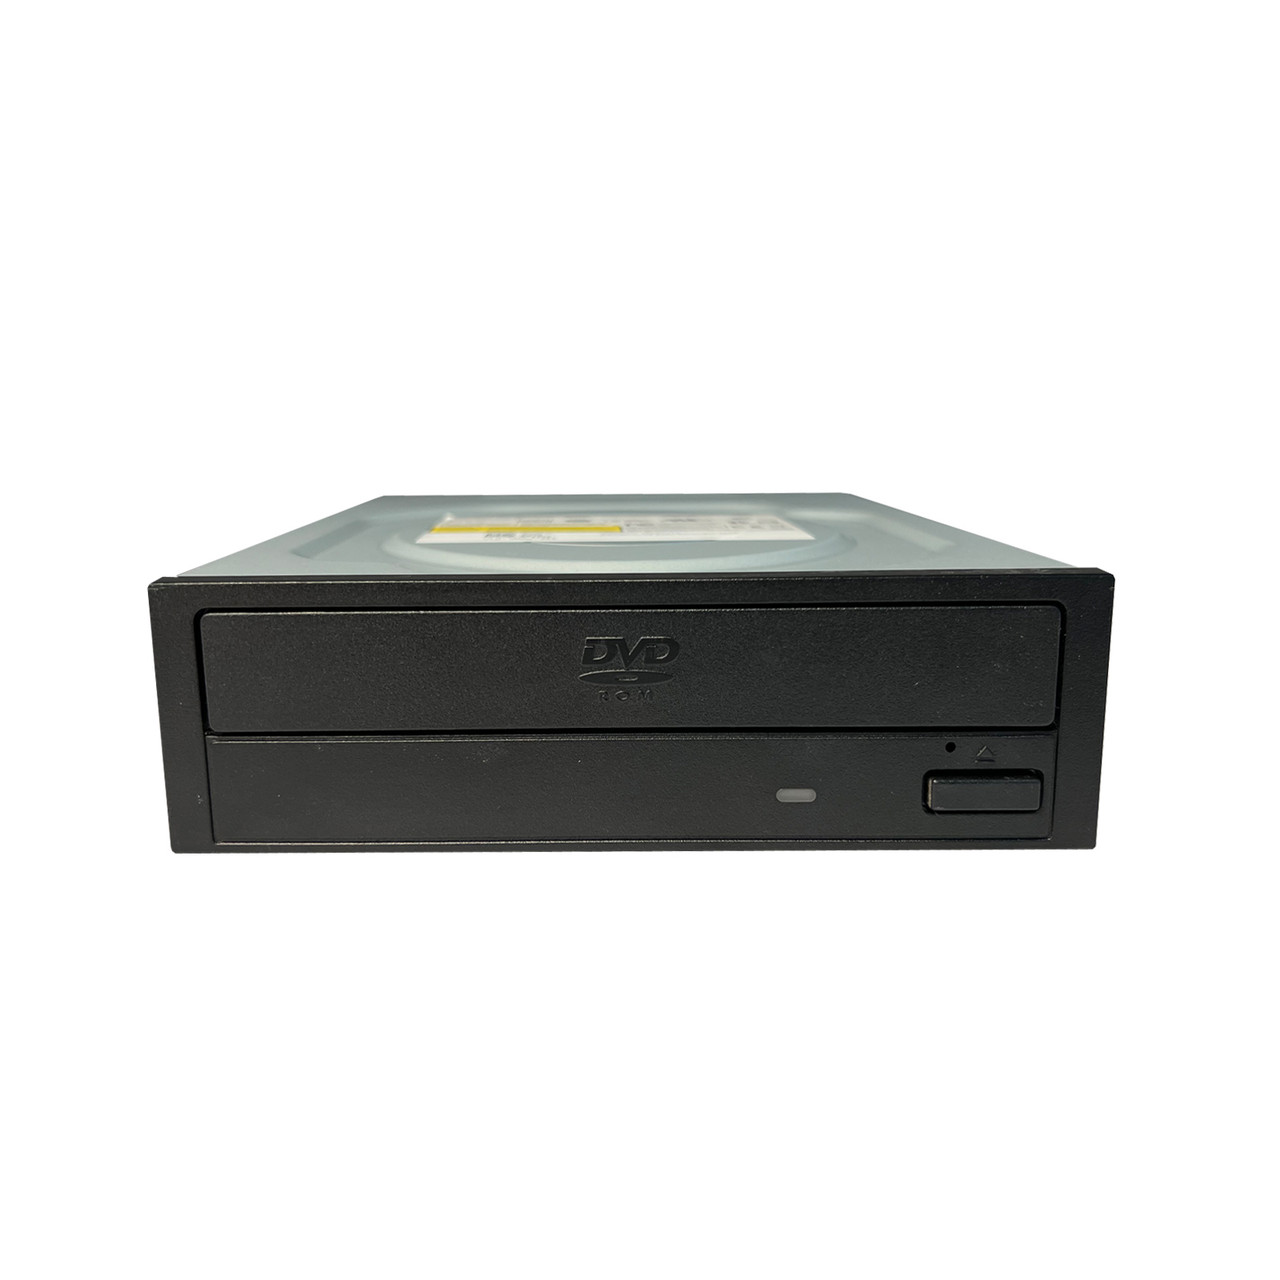 Dell X8555 5.25" IDE DVD-Rom Optical Drive DDU1615